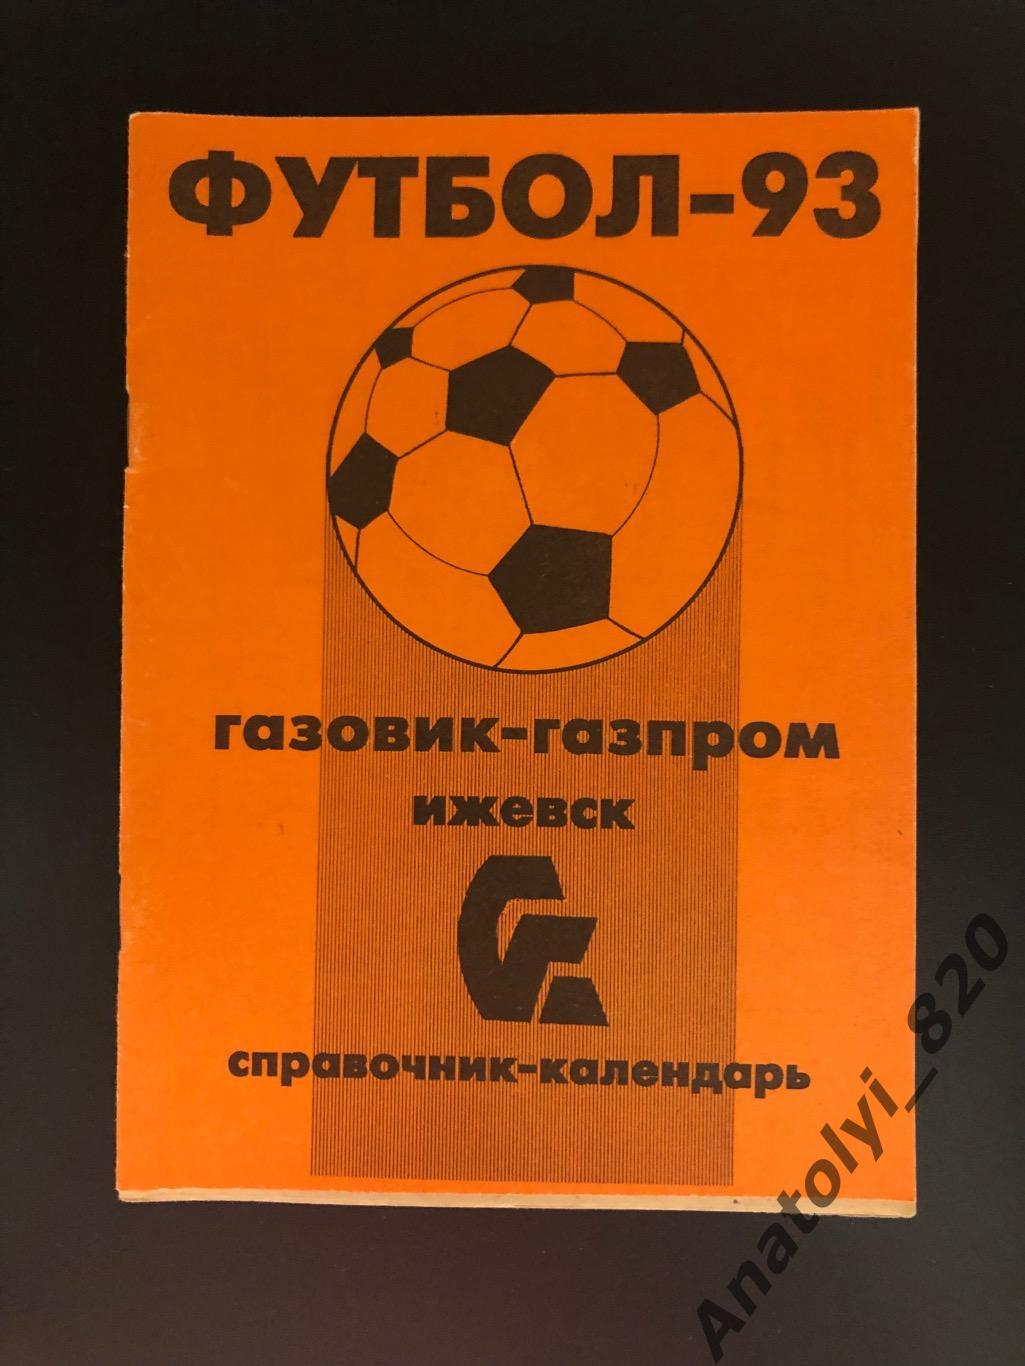 Газовик-Газпром Ижевск 1993 год календарь - справочник